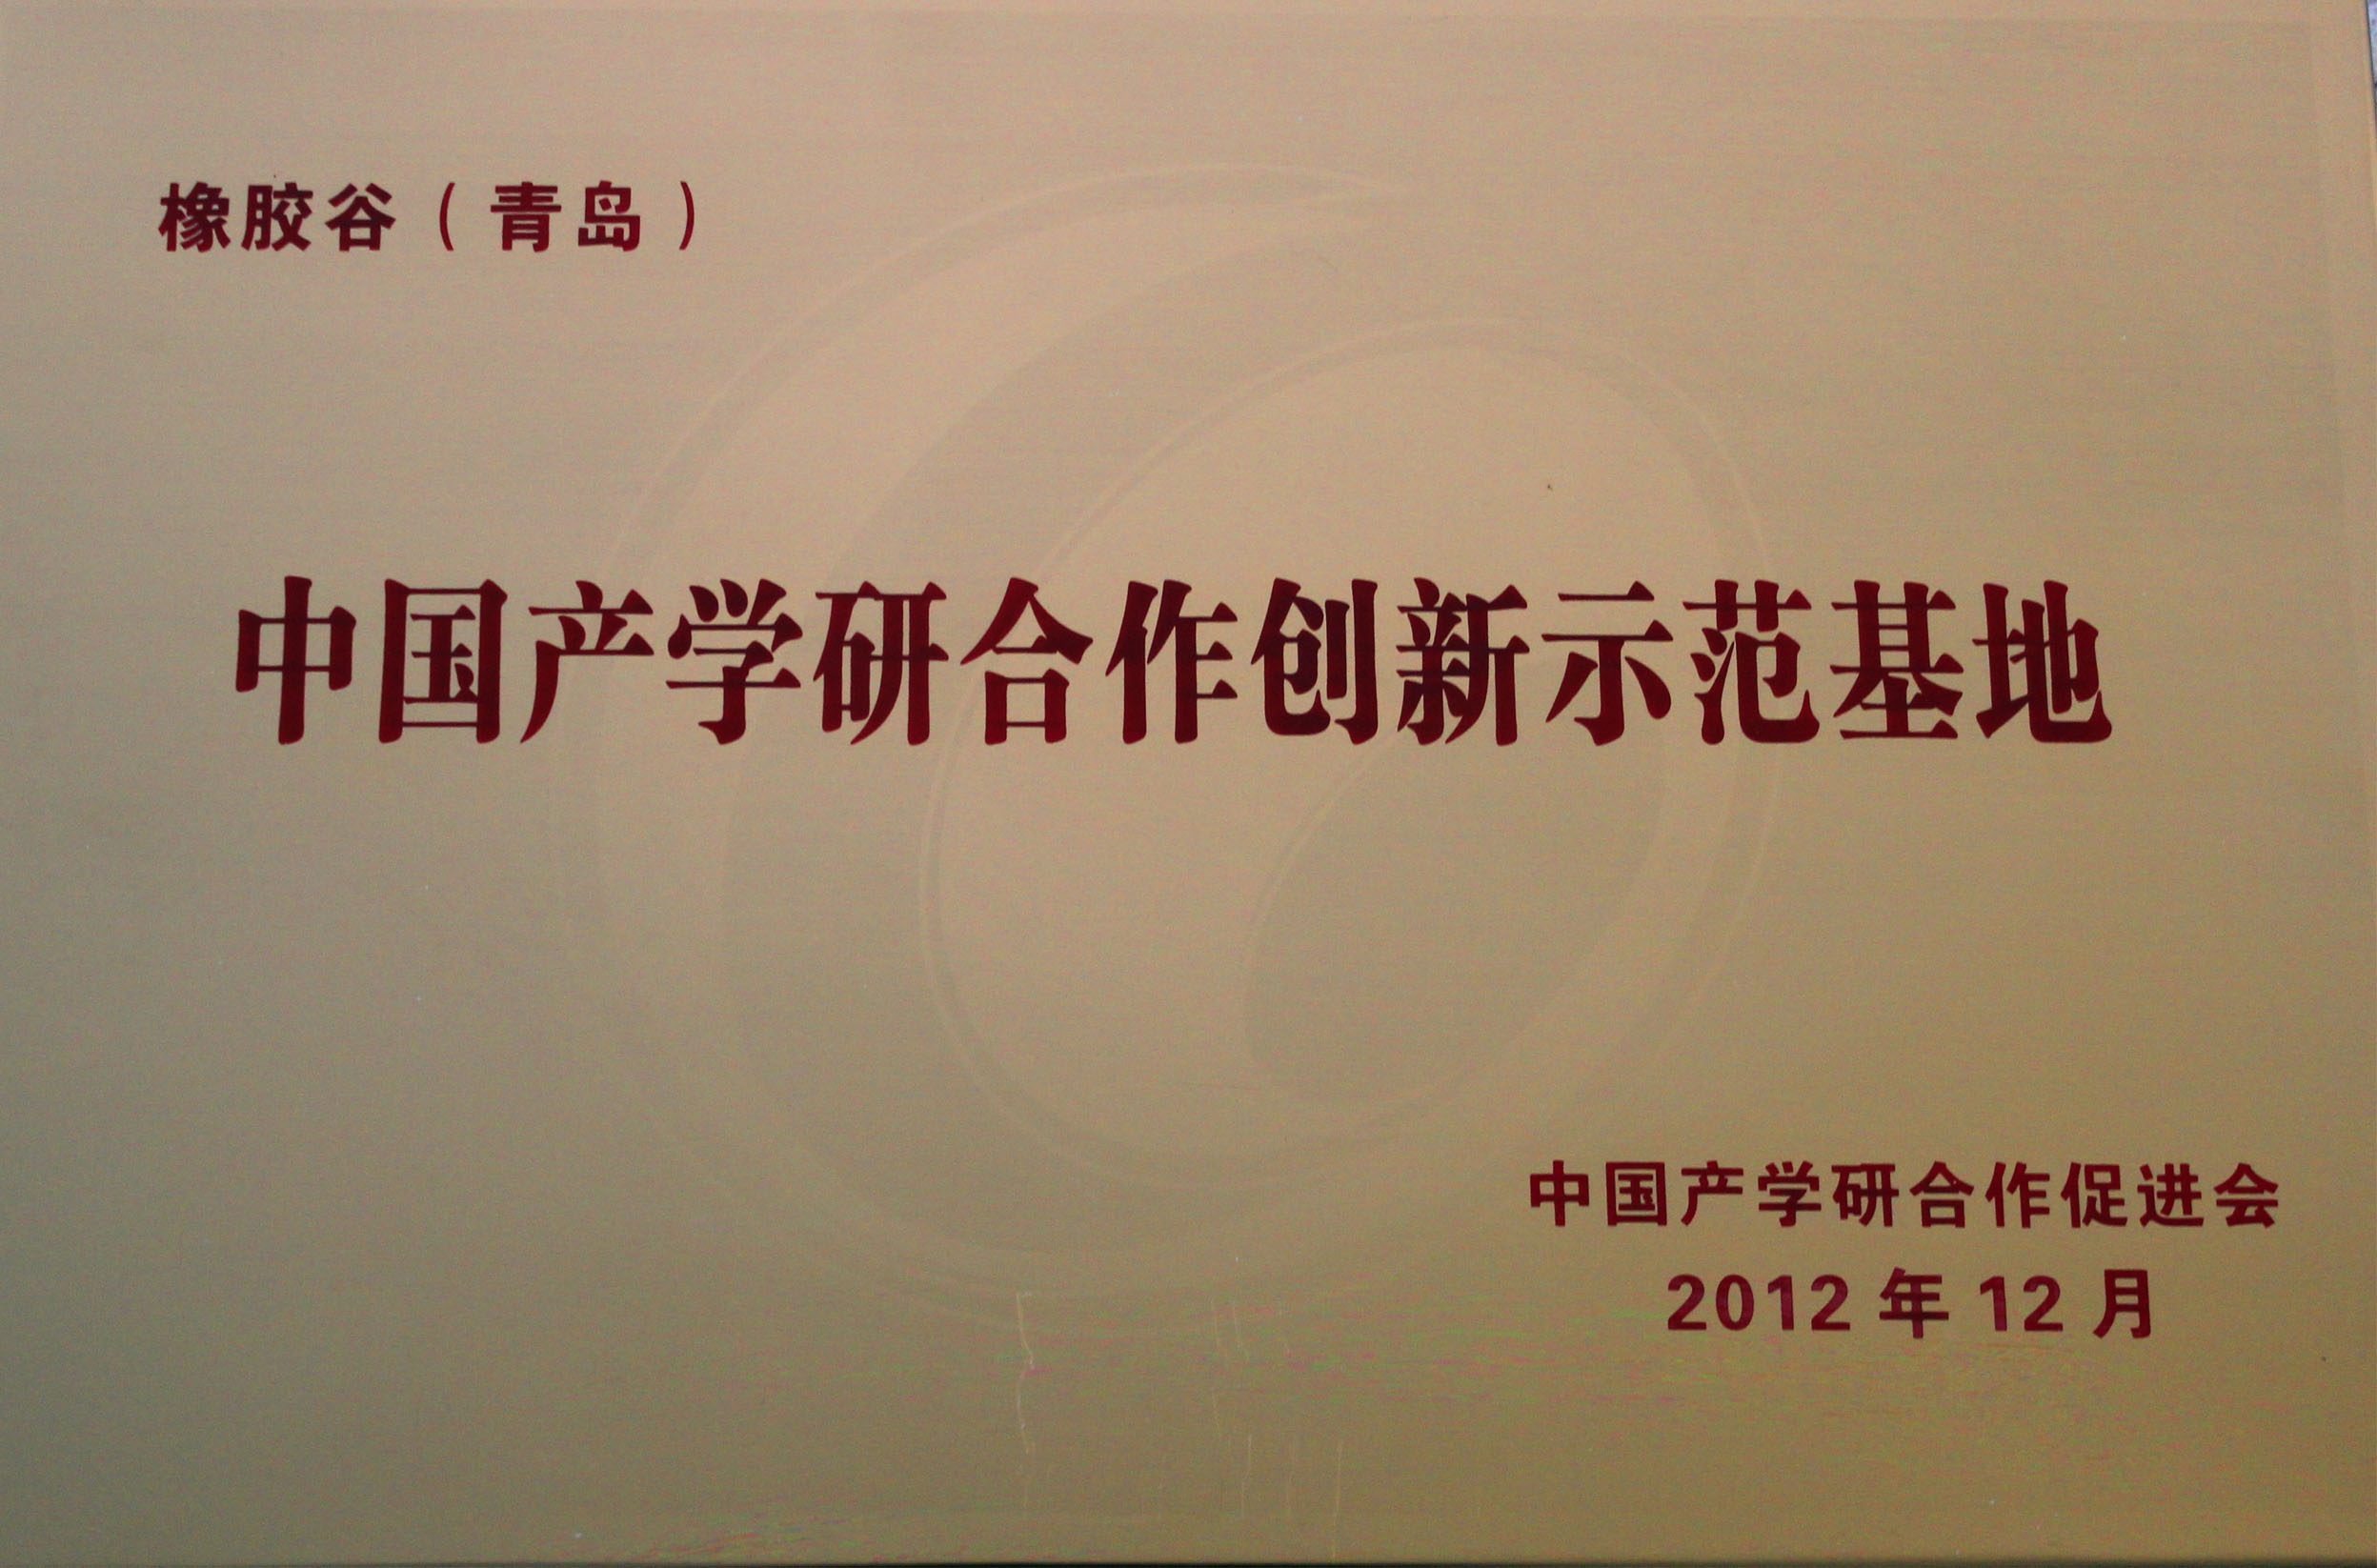 中国产学研合作创新示范基地-橡胶谷（青岛）-中国产学研合作促进会